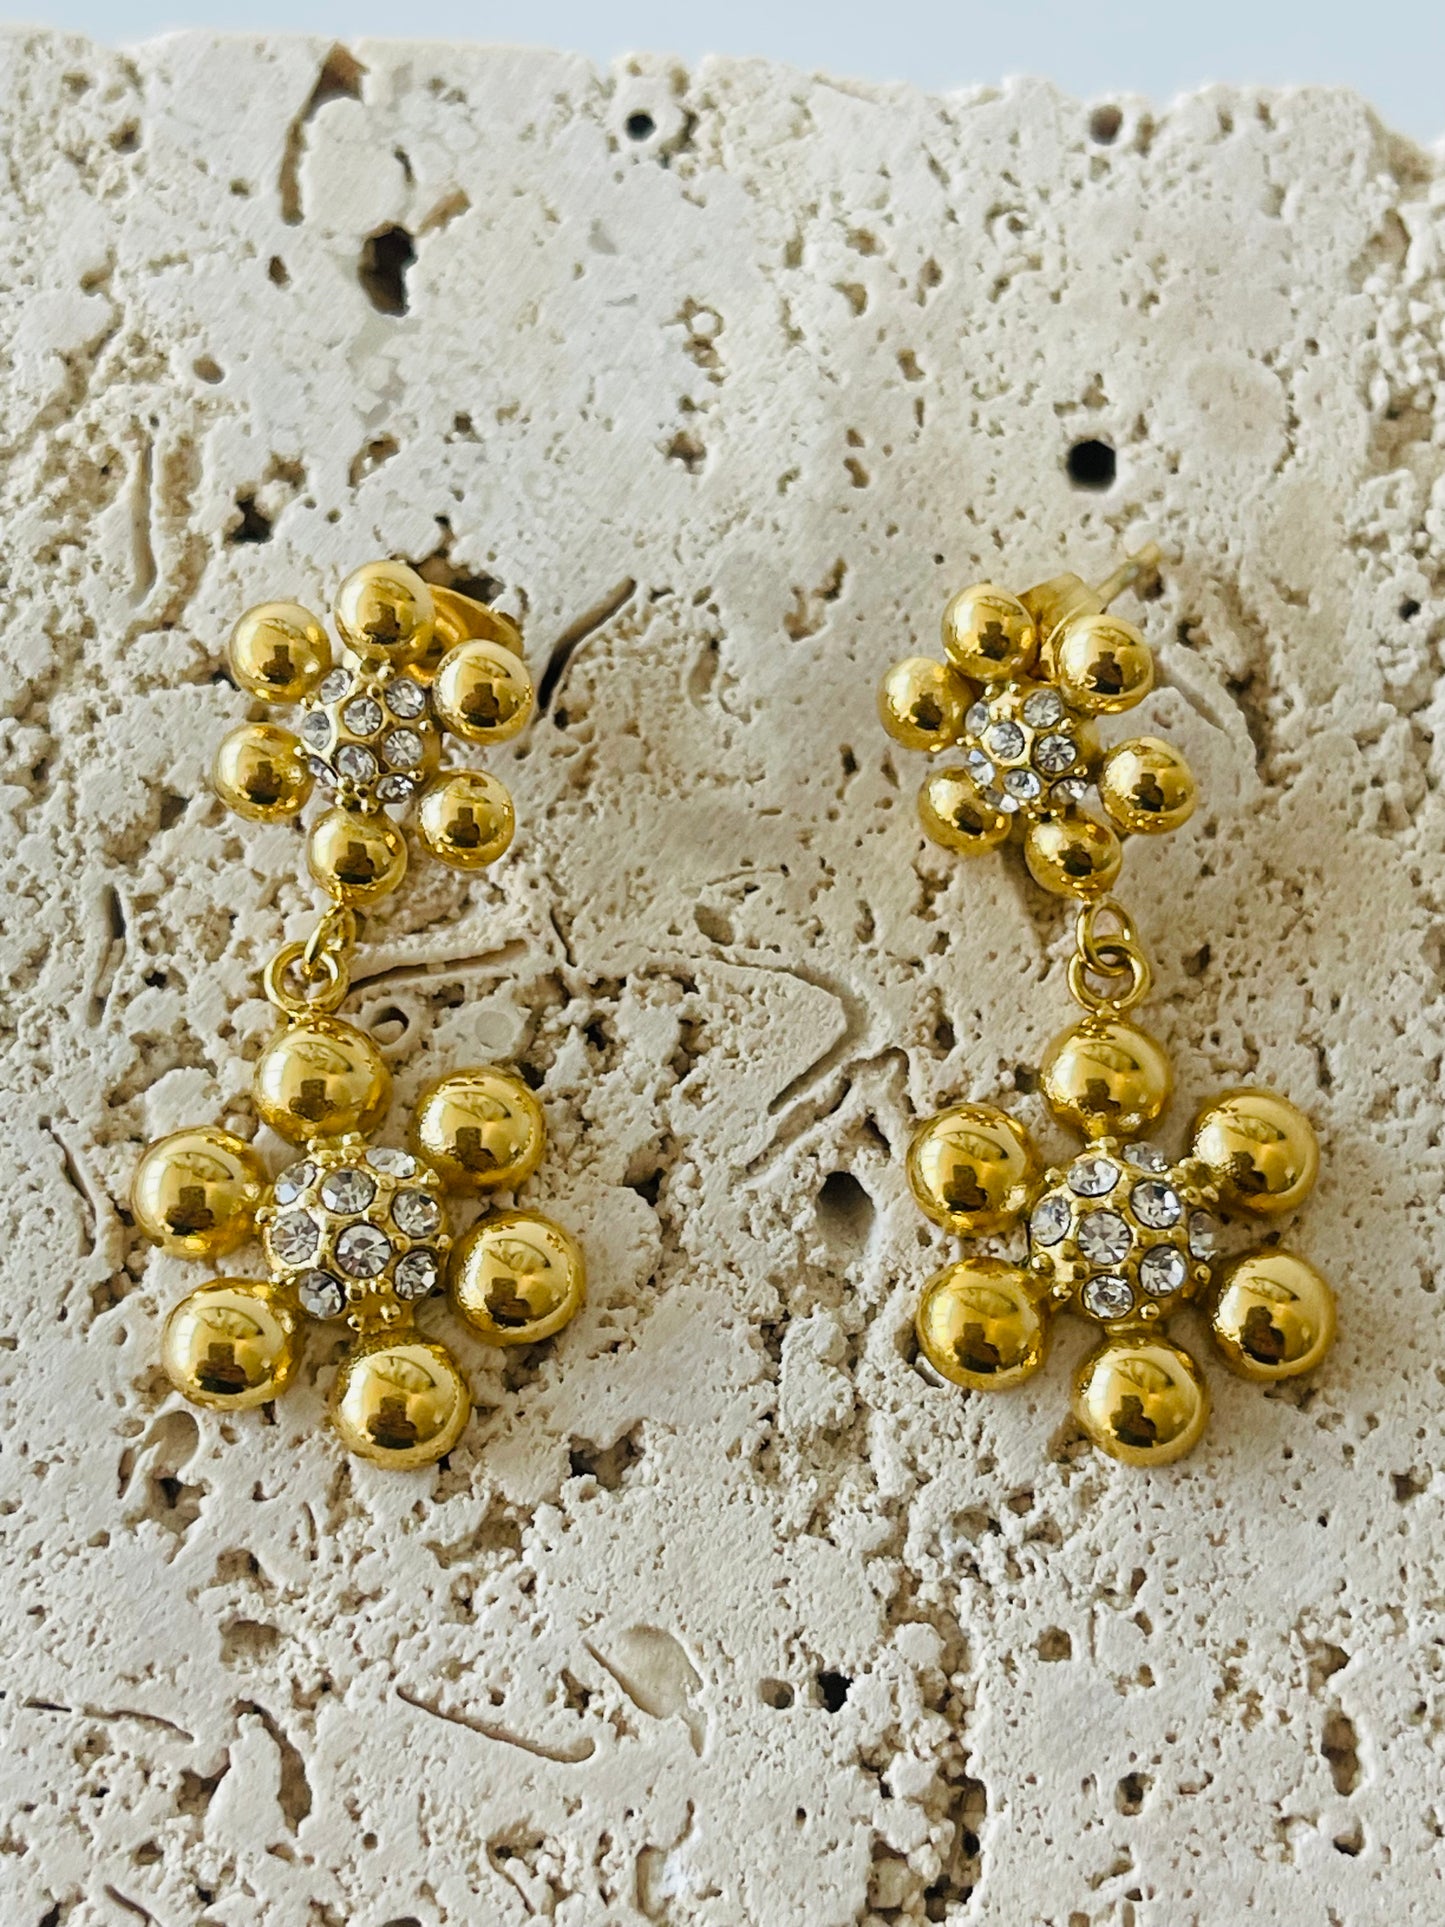 Flores earrings